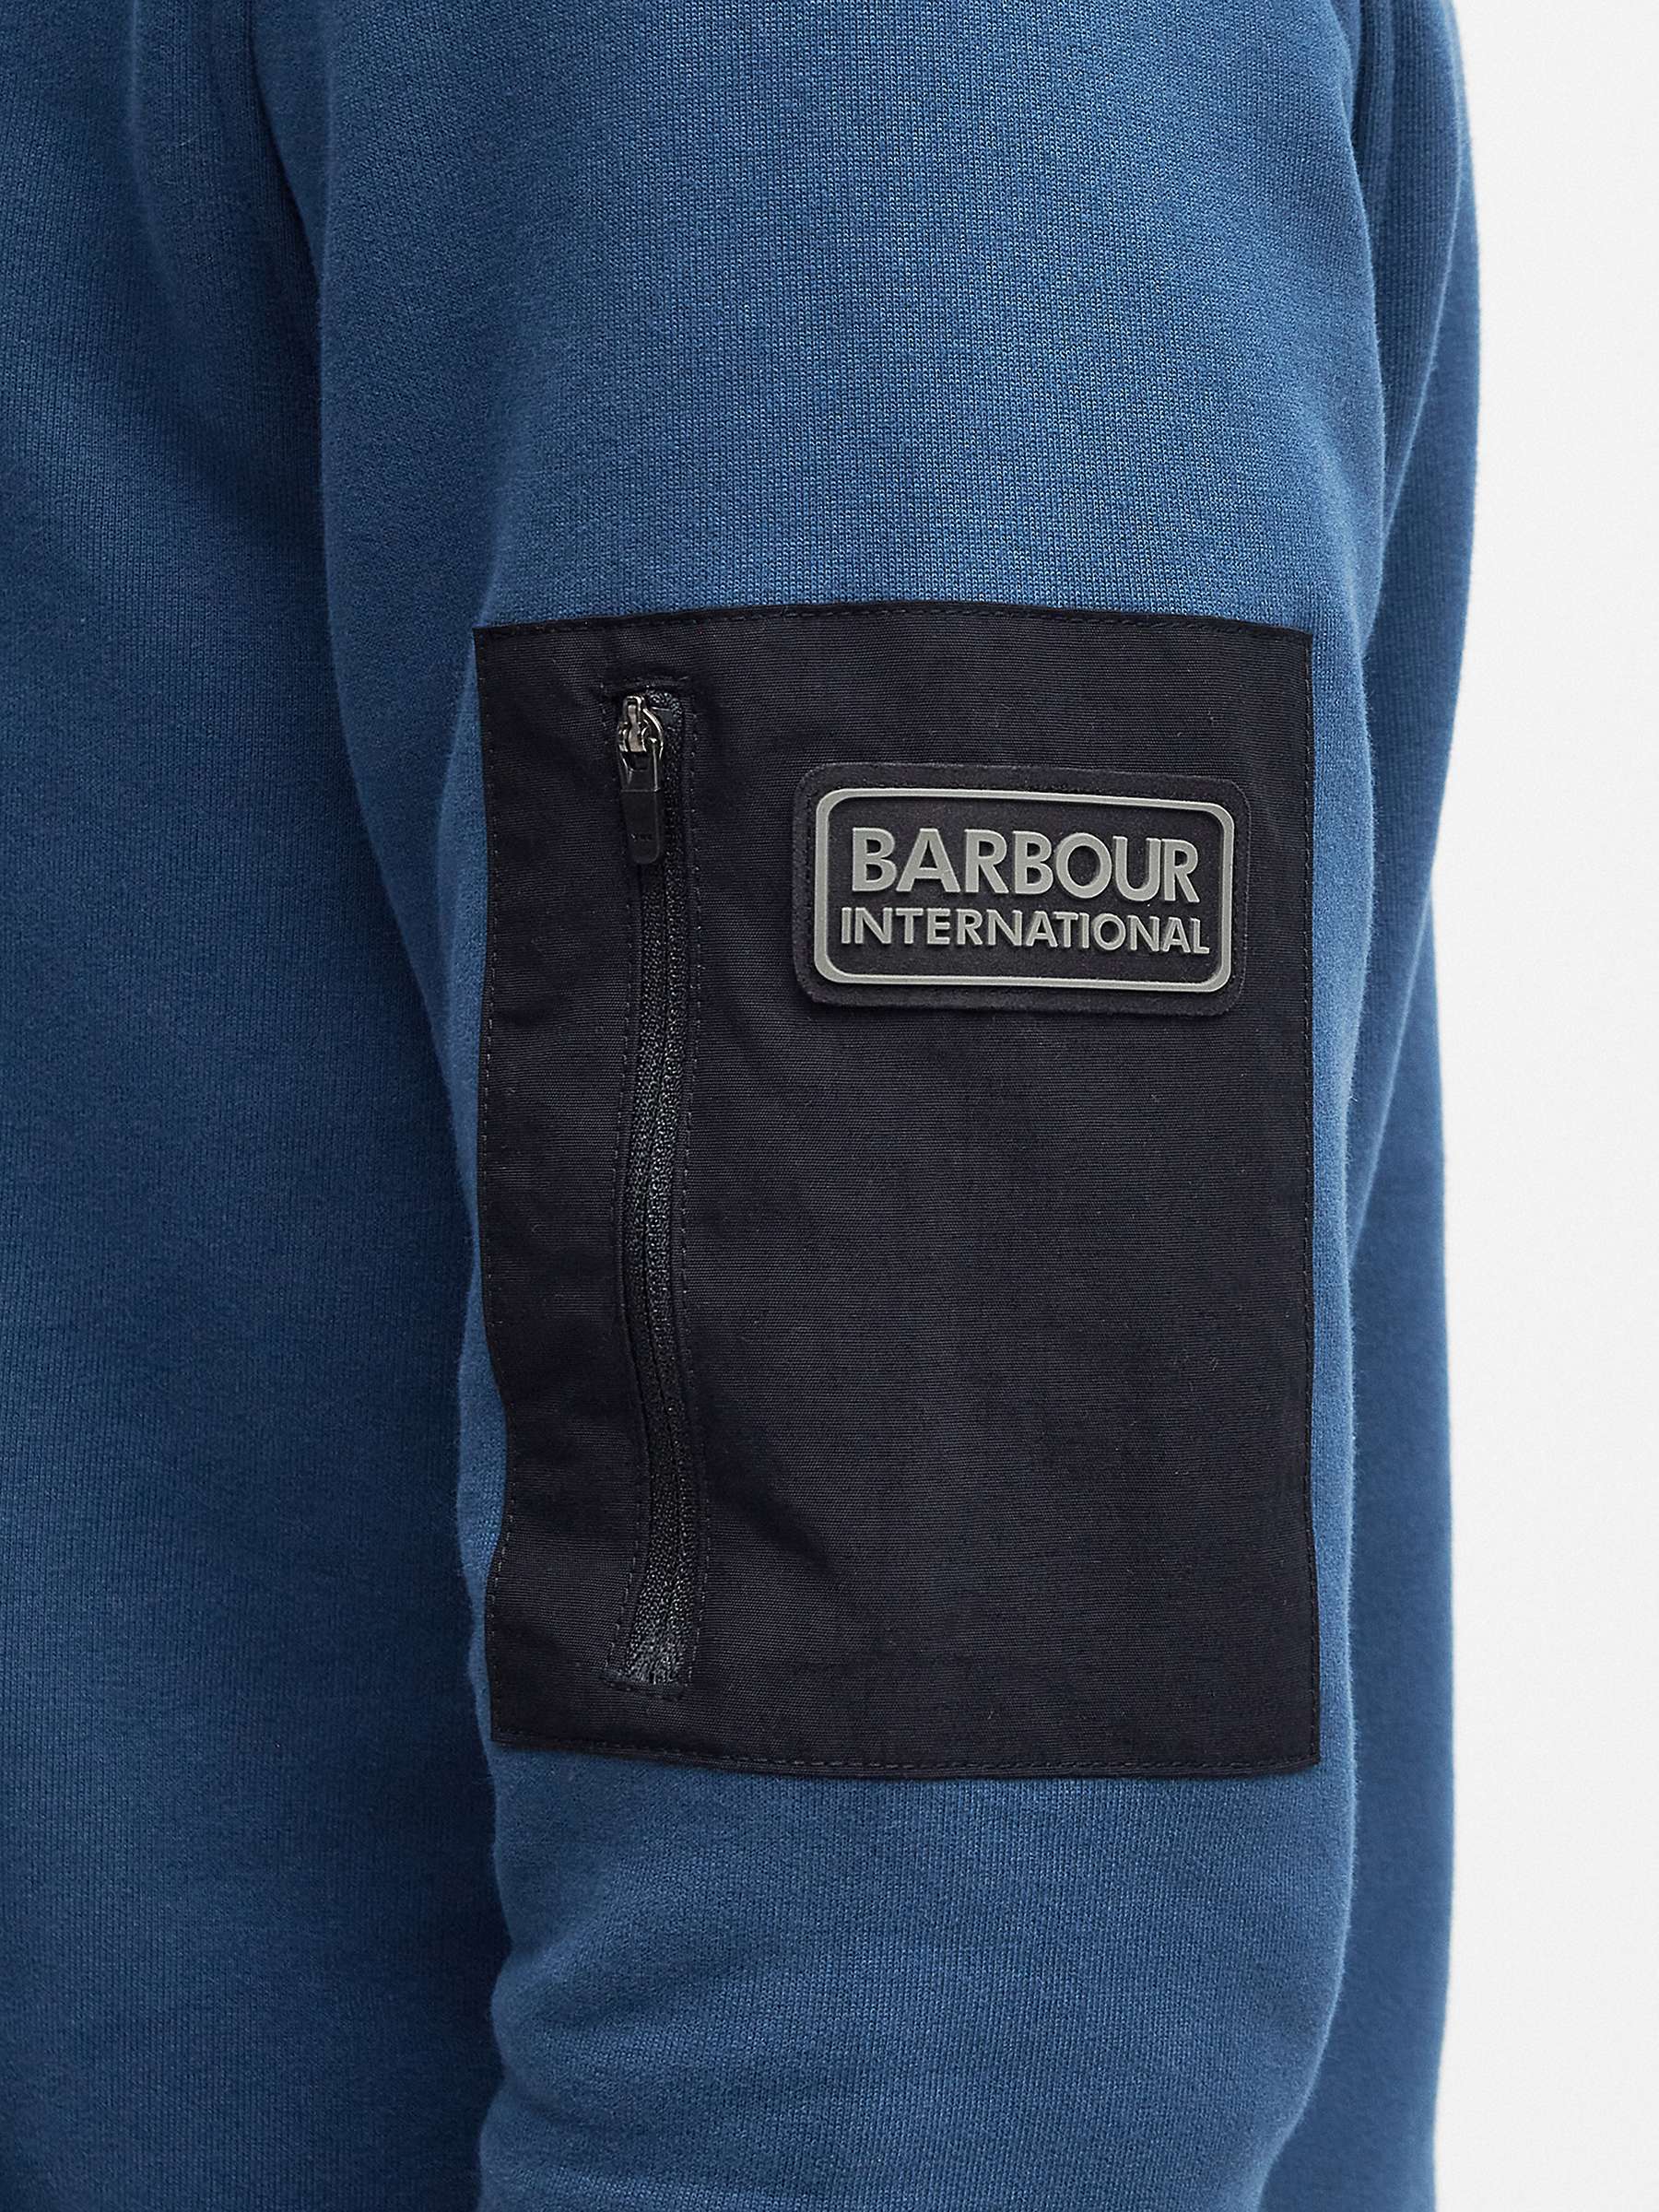 Buy Barbour Tempo Long Sleeve Hoodie, Moonlit Ocean Online at johnlewis.com